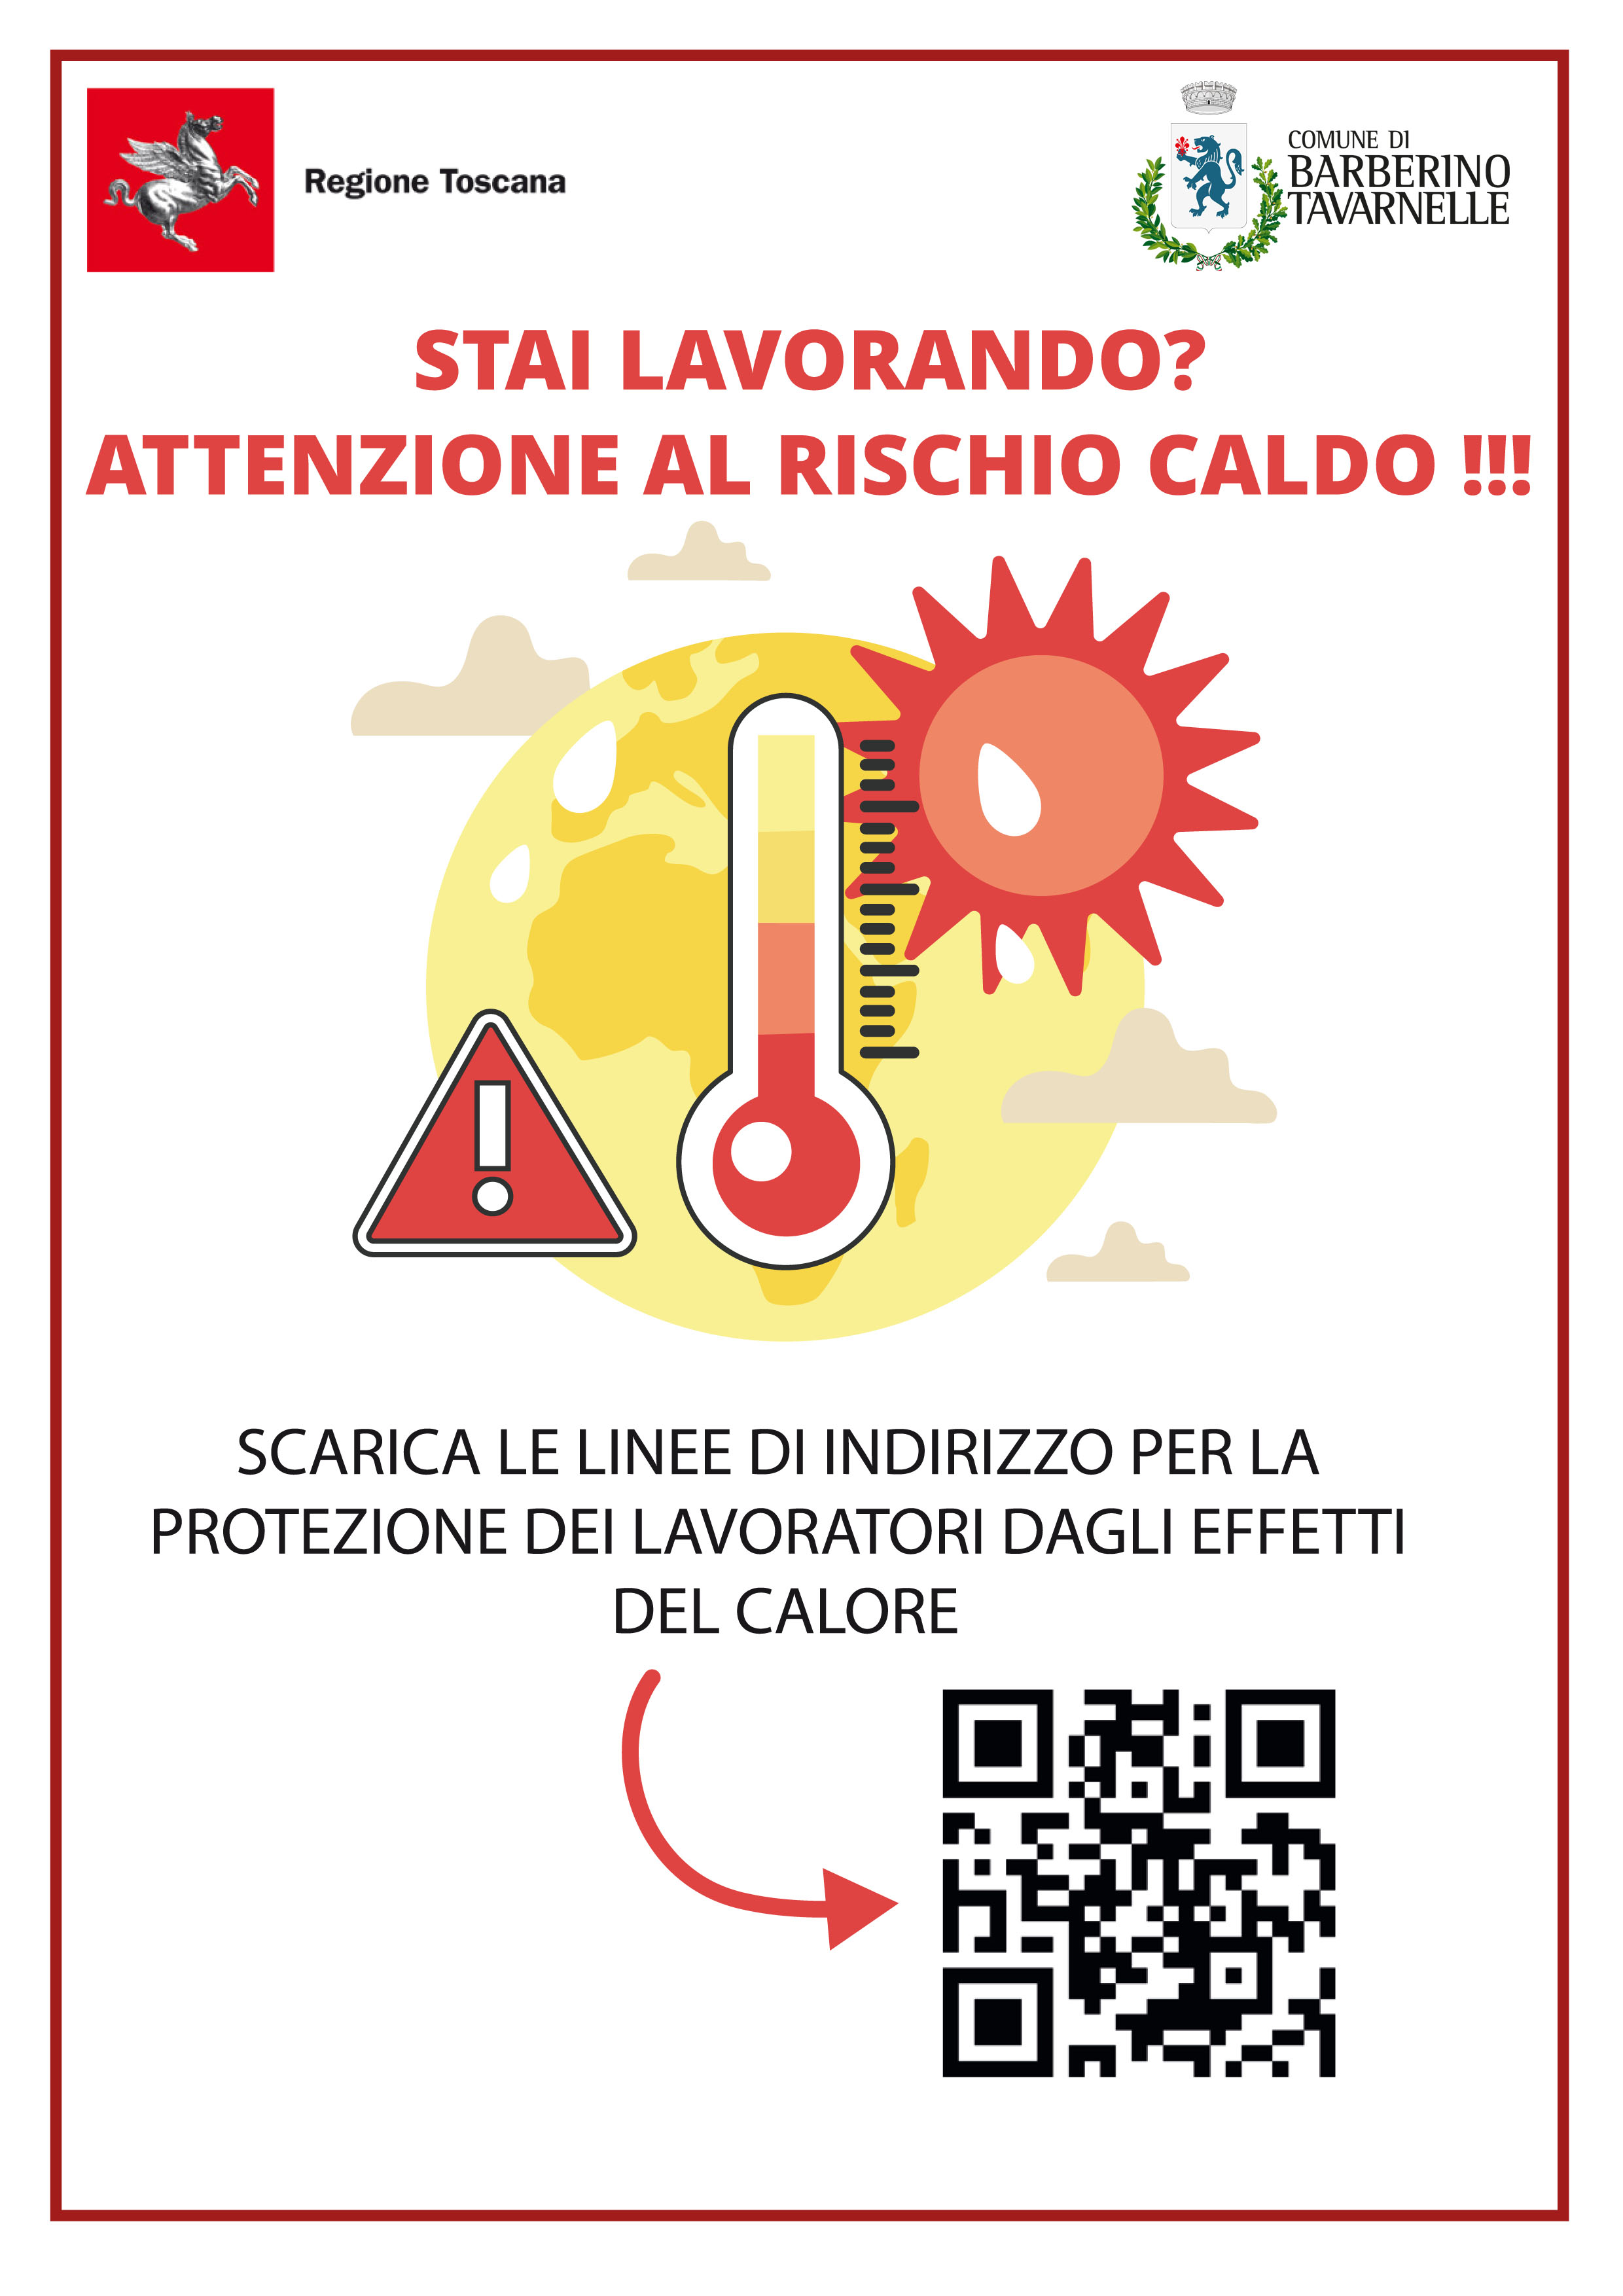 immagine locandina Regione Toscana_colpi di calore_qrcode